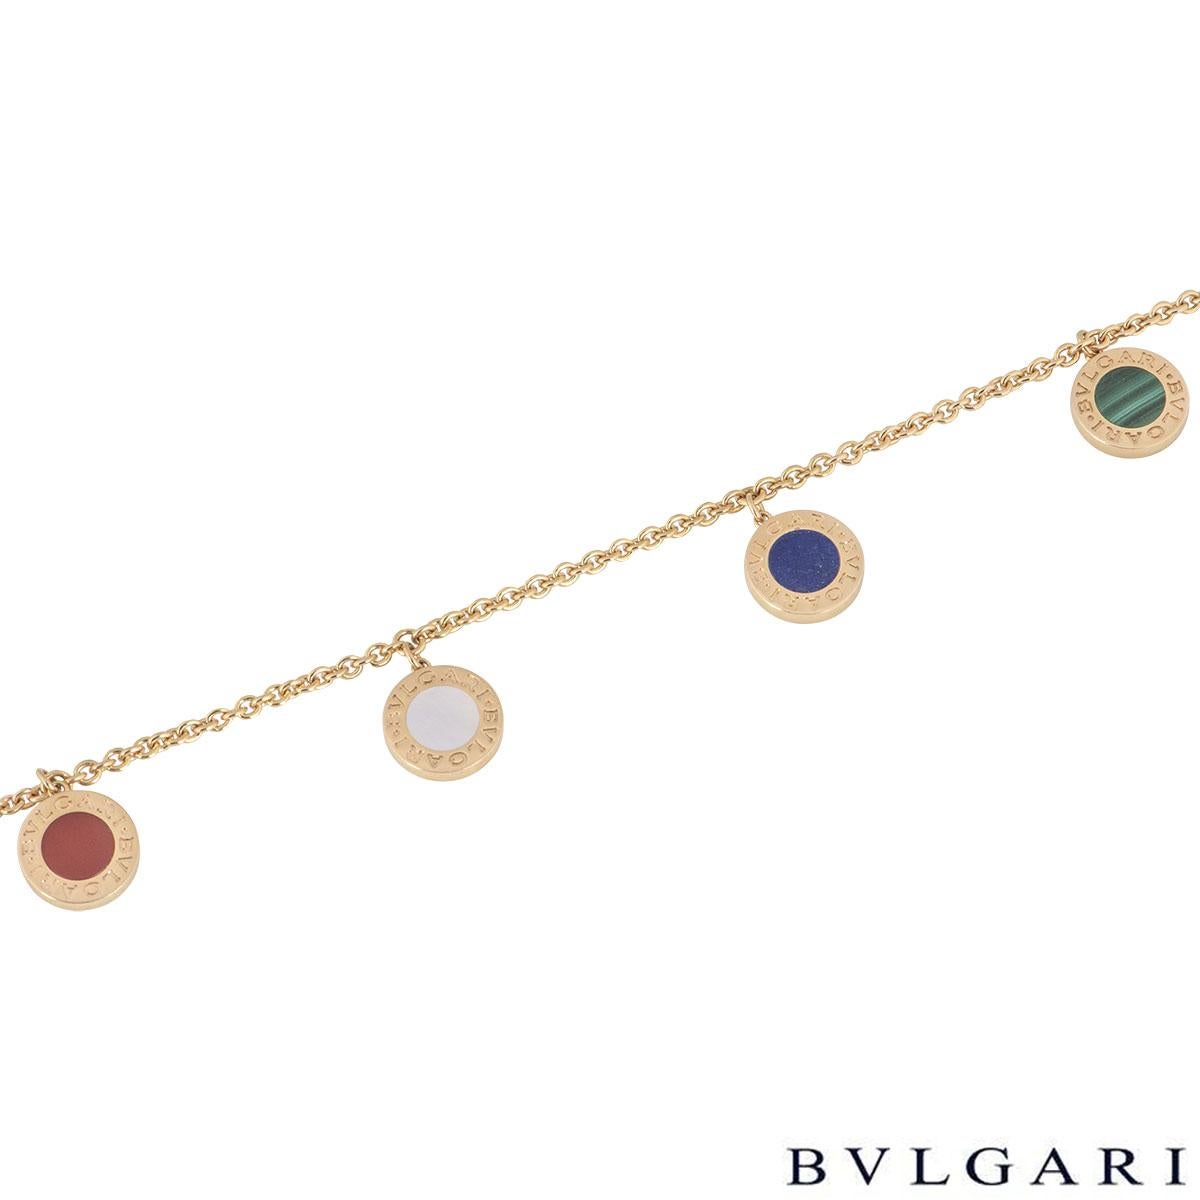 bvlgari bracelet rose gold